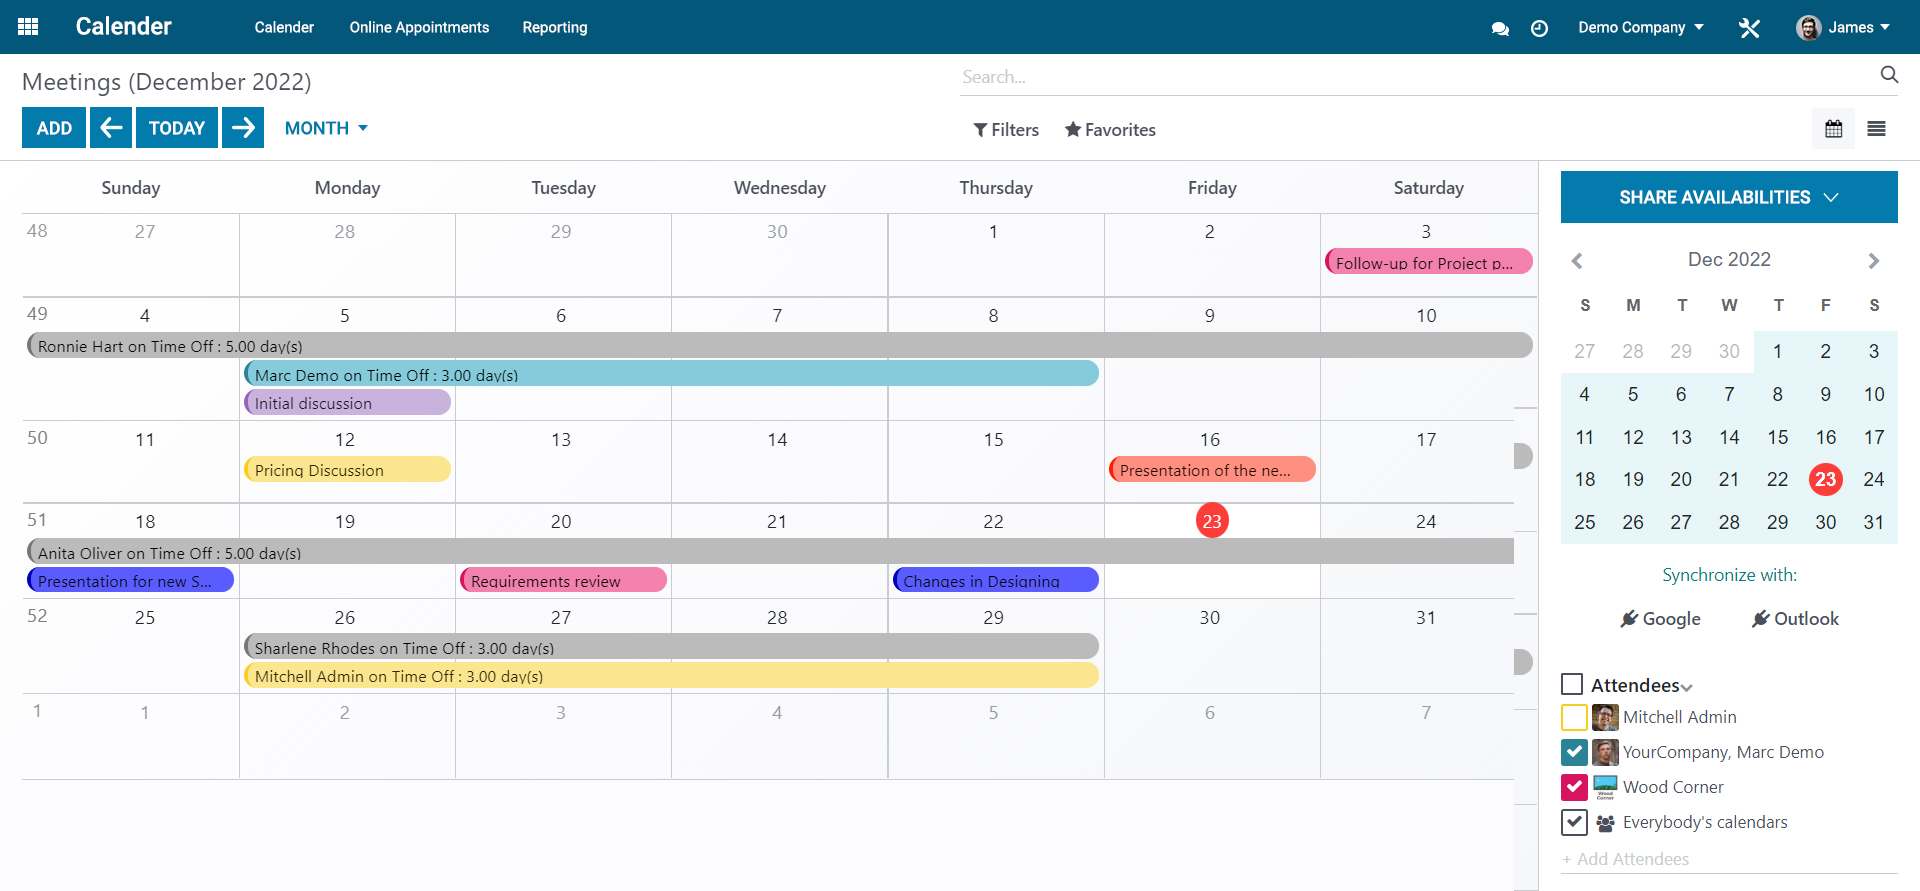 Screenshots of schedule job interviews - calendar view